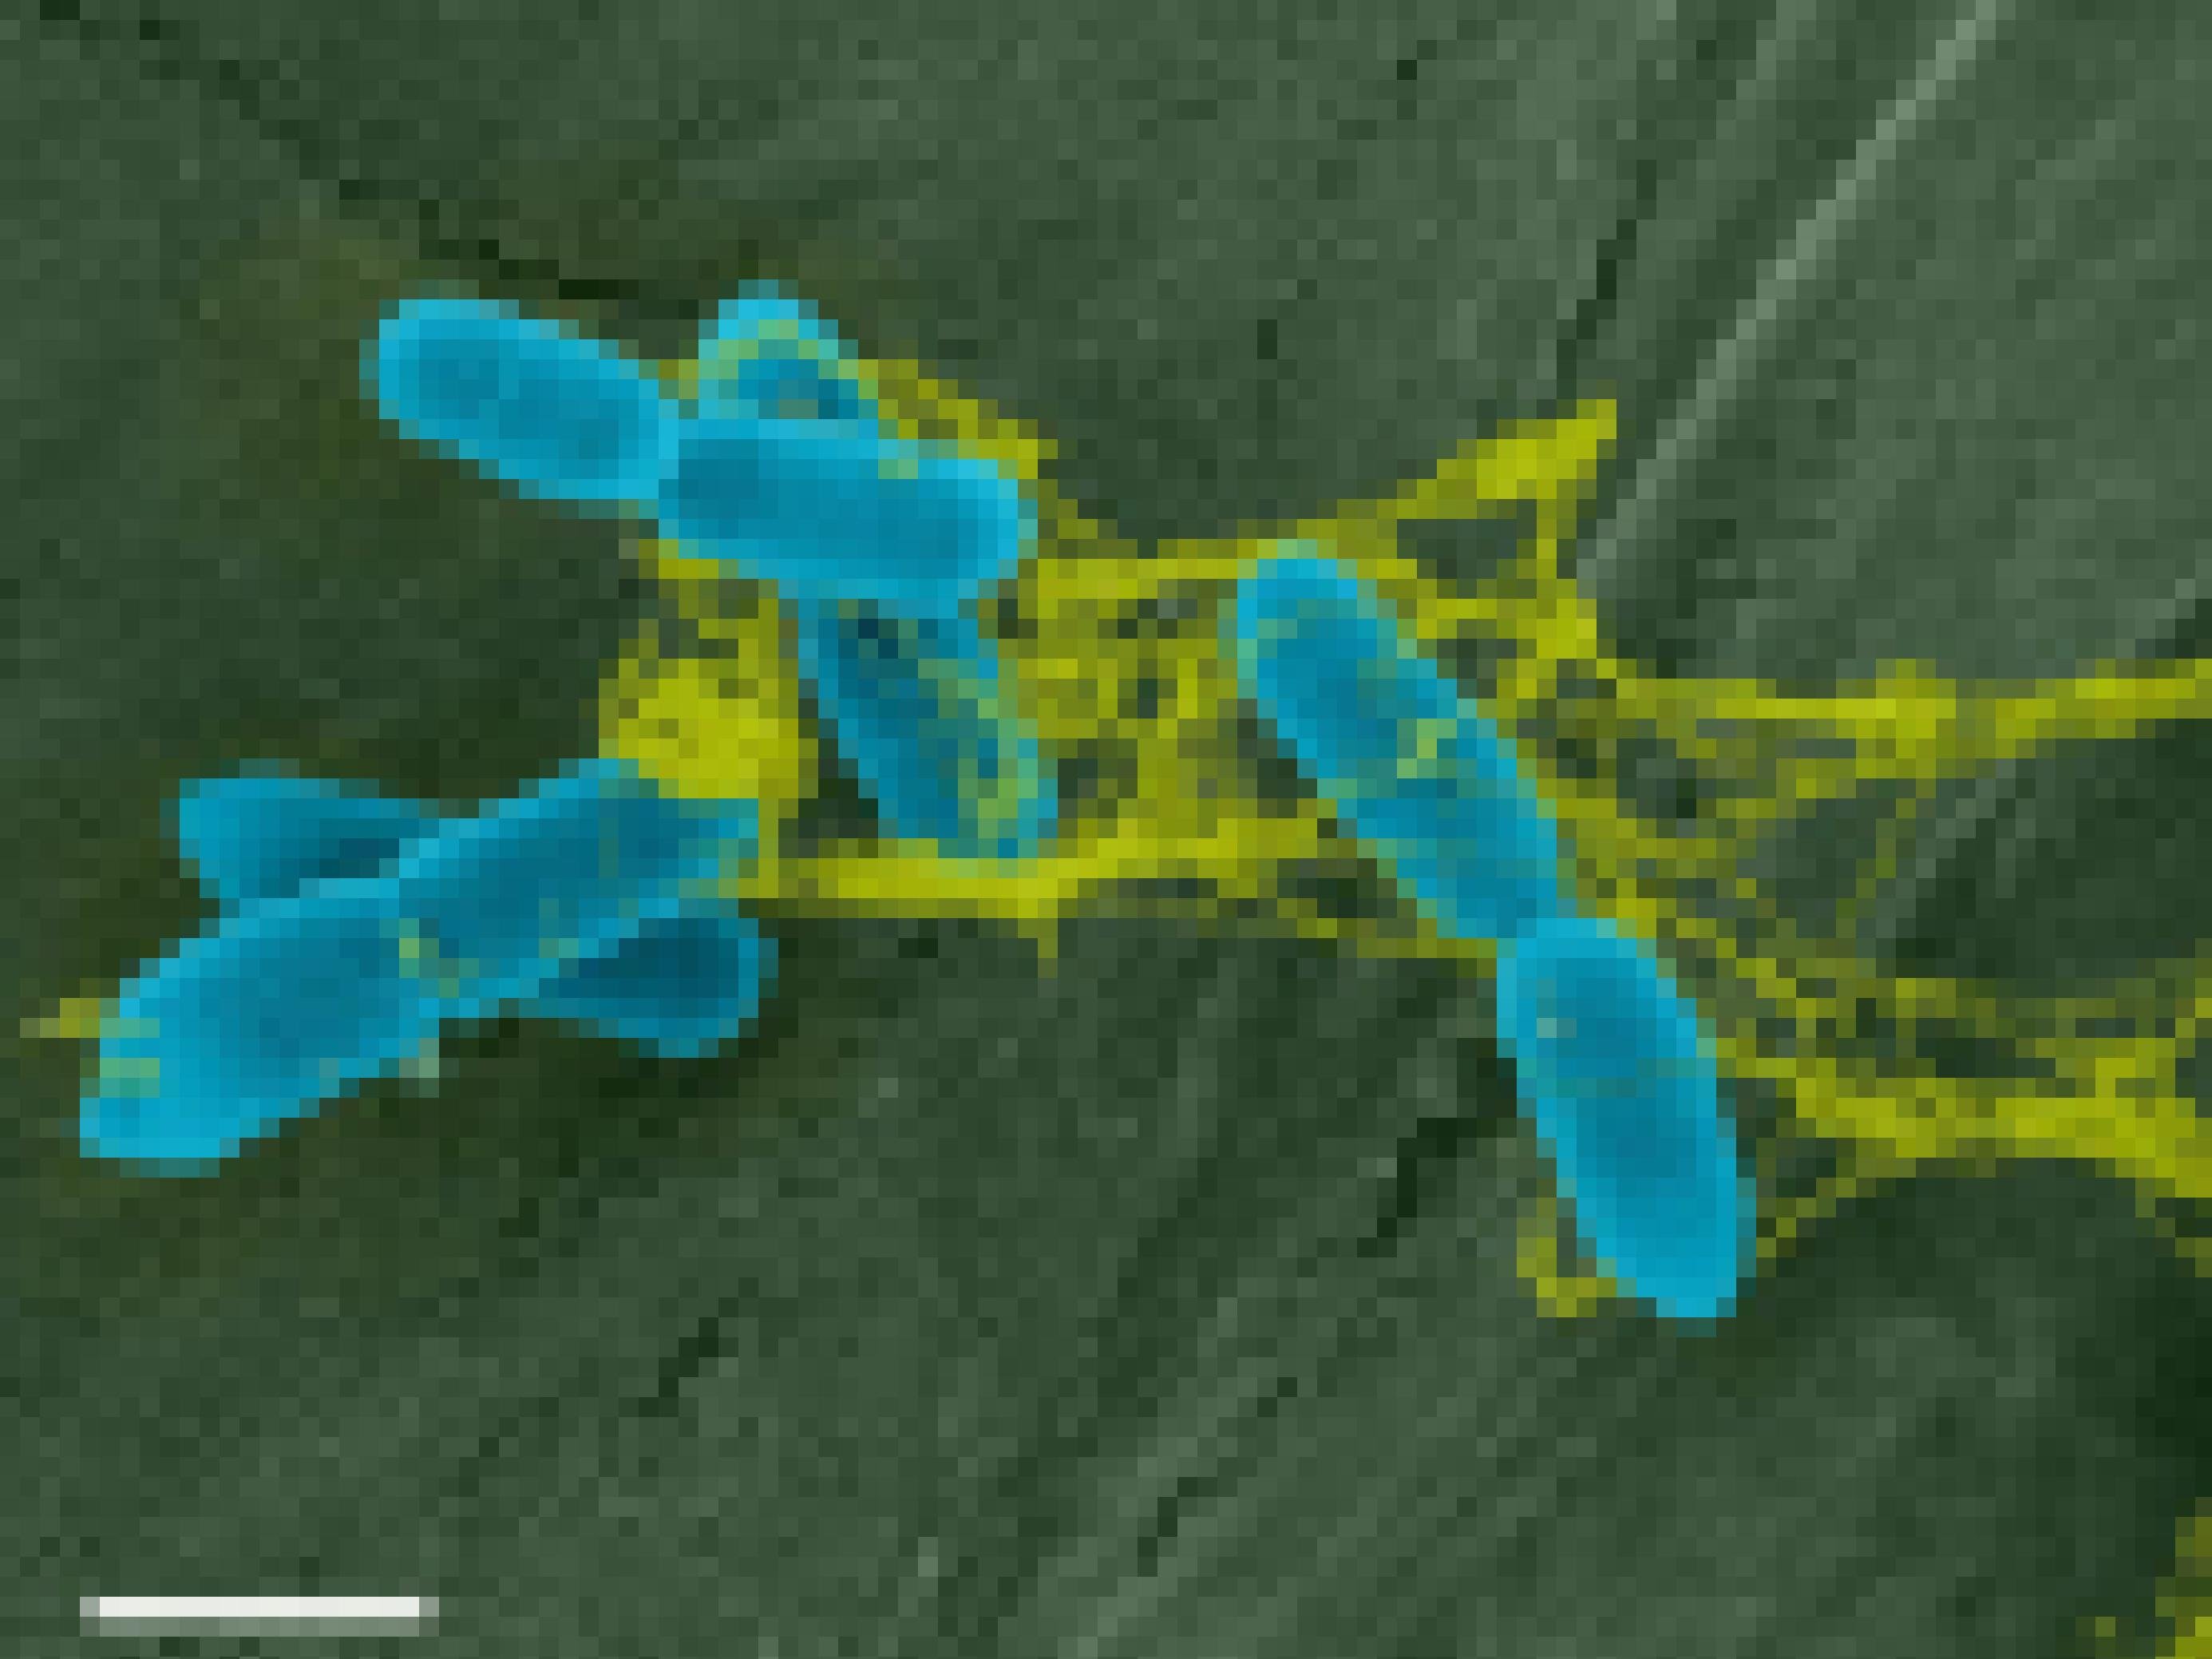 Blau gefärbte Bakterien hängen in einem gelb gefärbten Netz fest, das an ein verklebtes Spinnennetz erinnert.